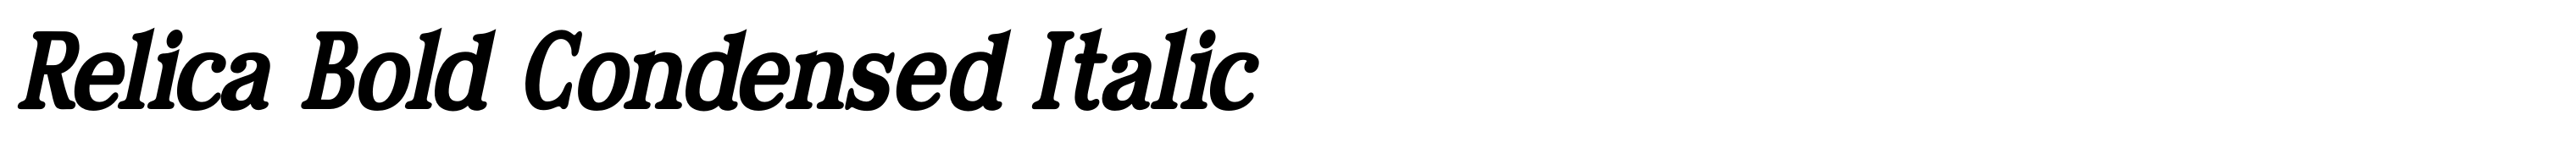 Relica Bold Condensed Italic